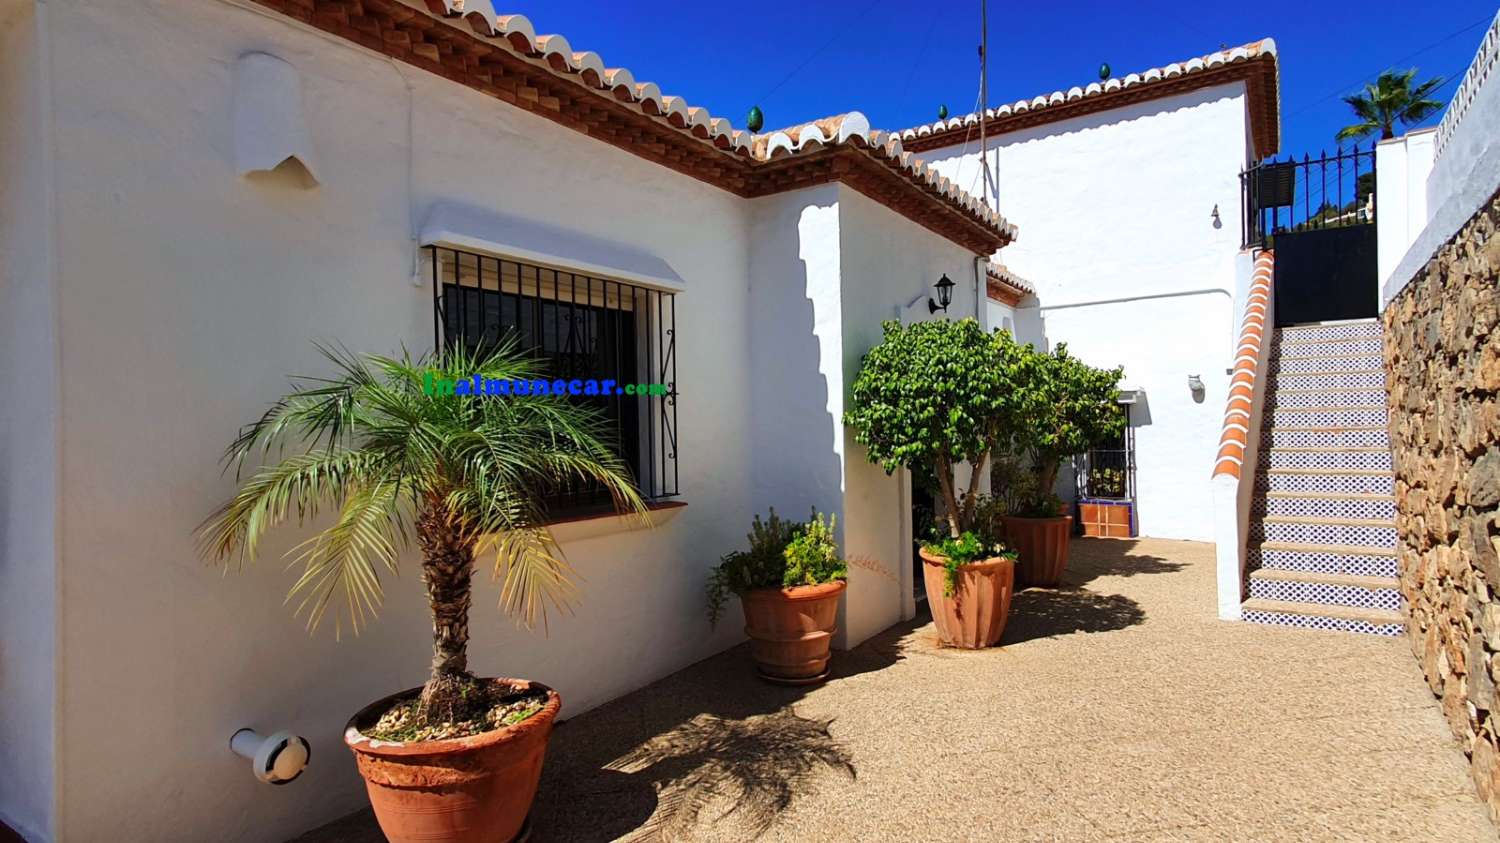 Villa til salg i Almuñécar med fantastisk havudsigt, have og garage – tæt på strand og restauranter